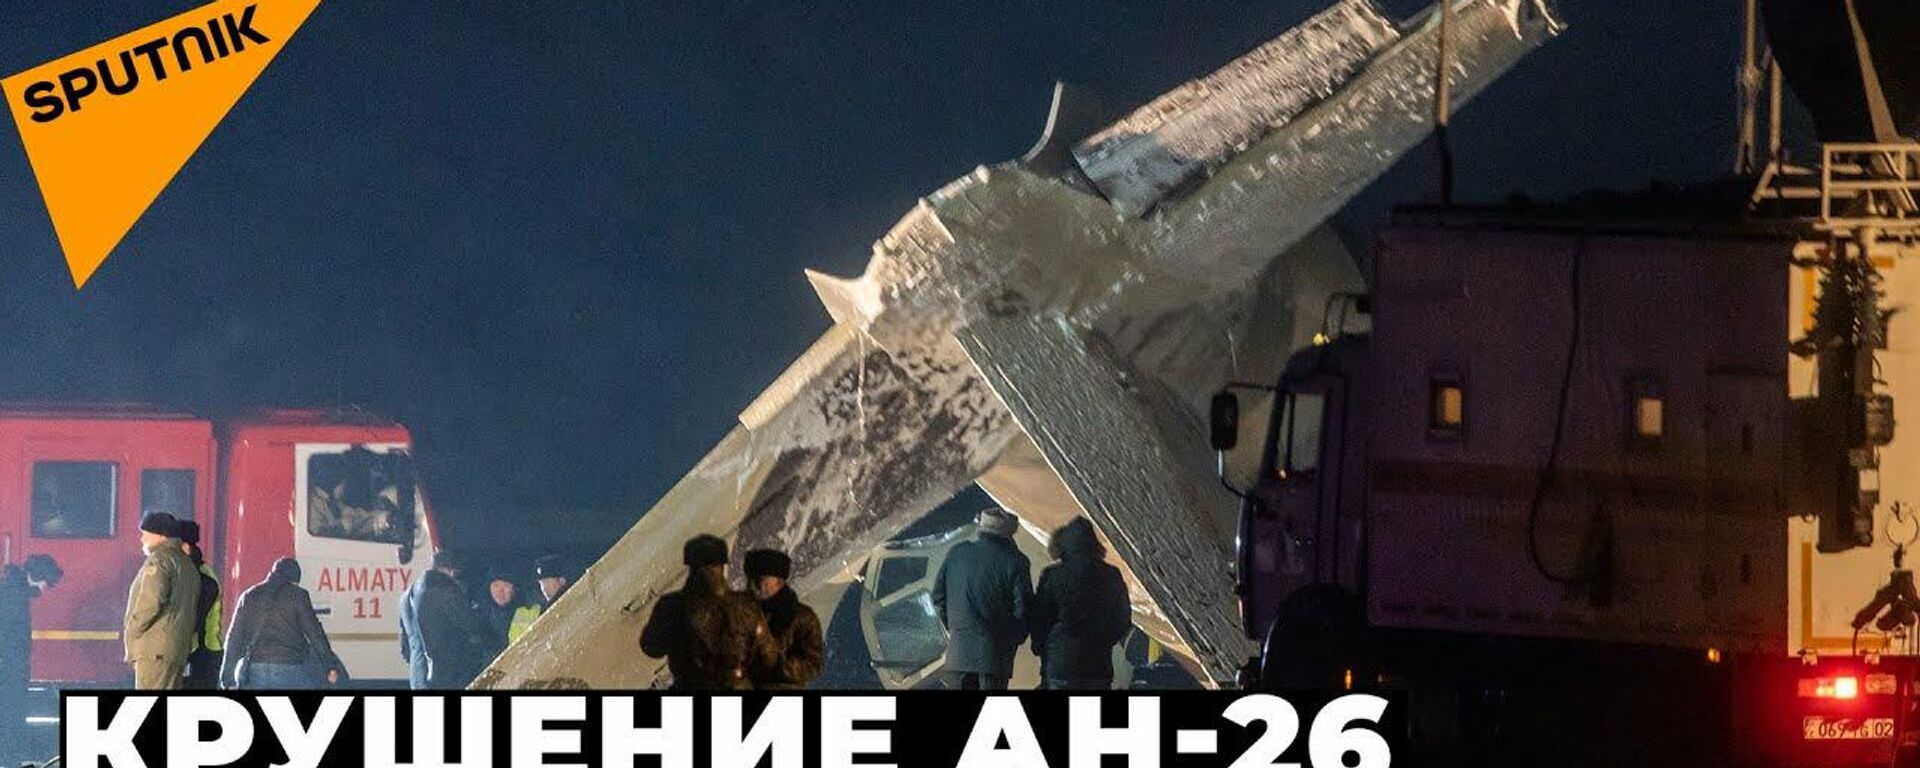 Военный самолет упал близ Алматы - Sputnik Ўзбекистон, 1920, 14.03.2021